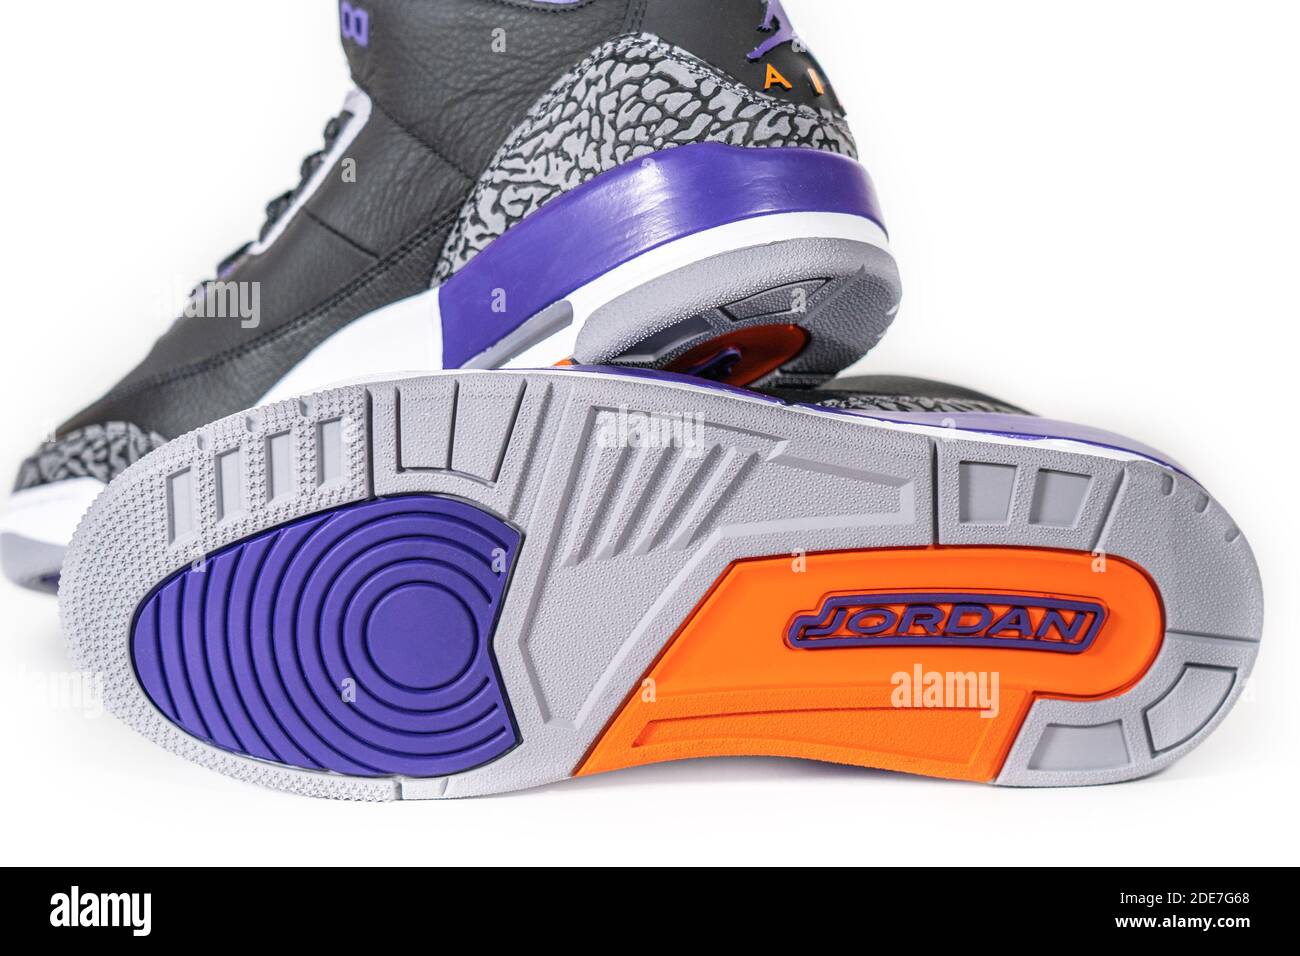 Air Jordan 3 Retro court Purple - légendaire célèbre Nike et Jordan marque  rétro basket-ball ou